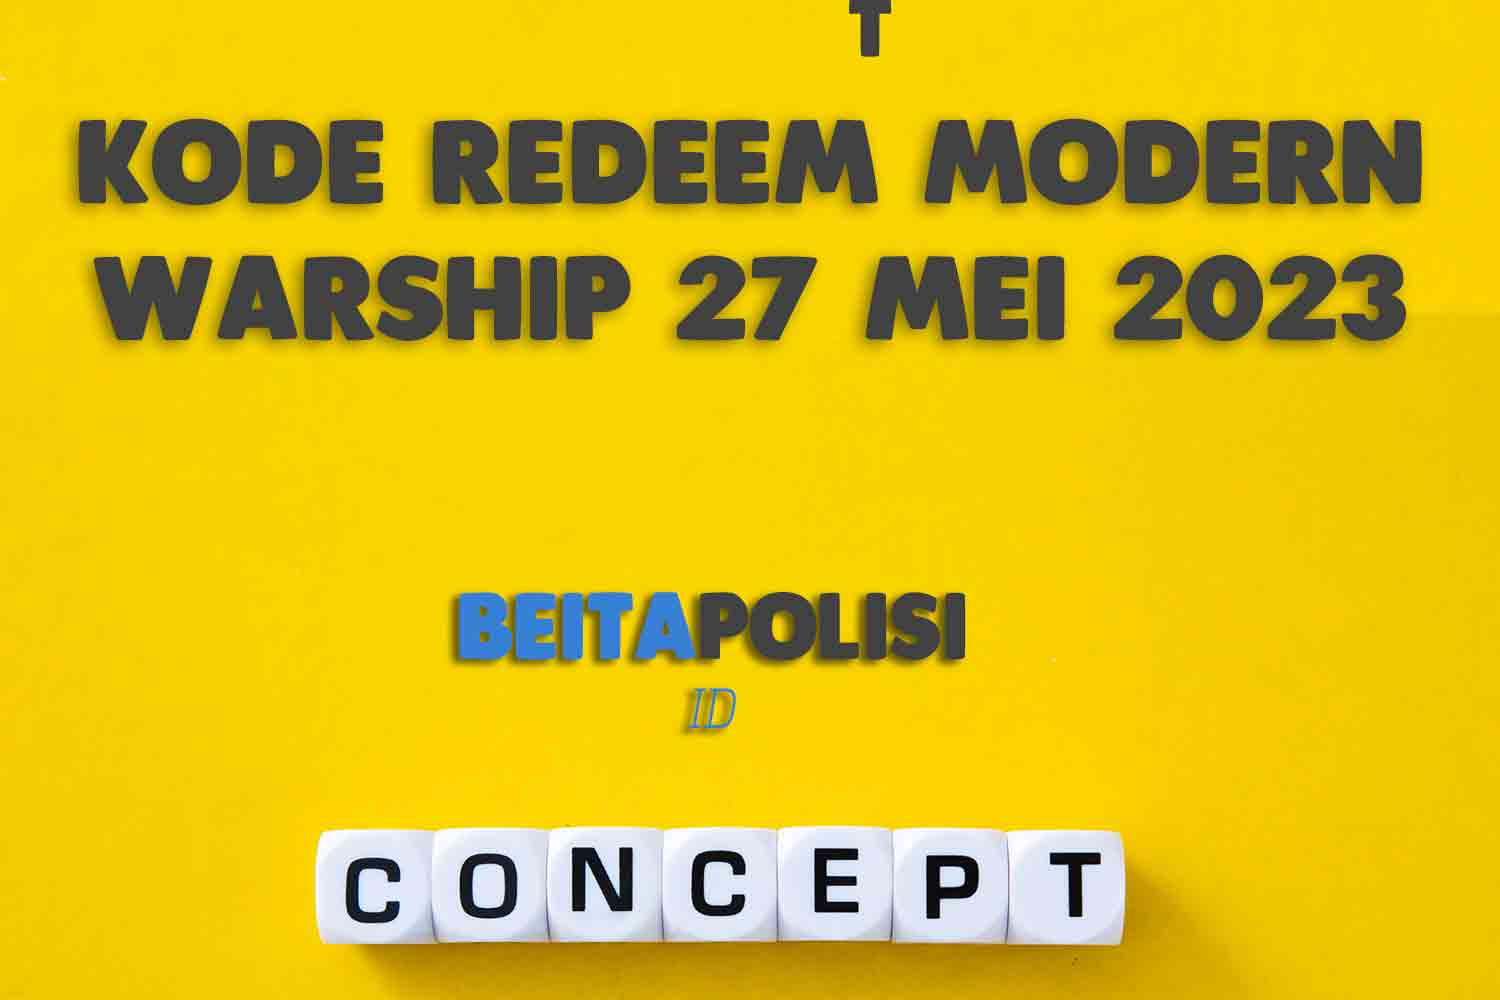 Kode Redeem Modern Warship 27 Mei 2023 Yang Masih Aktif